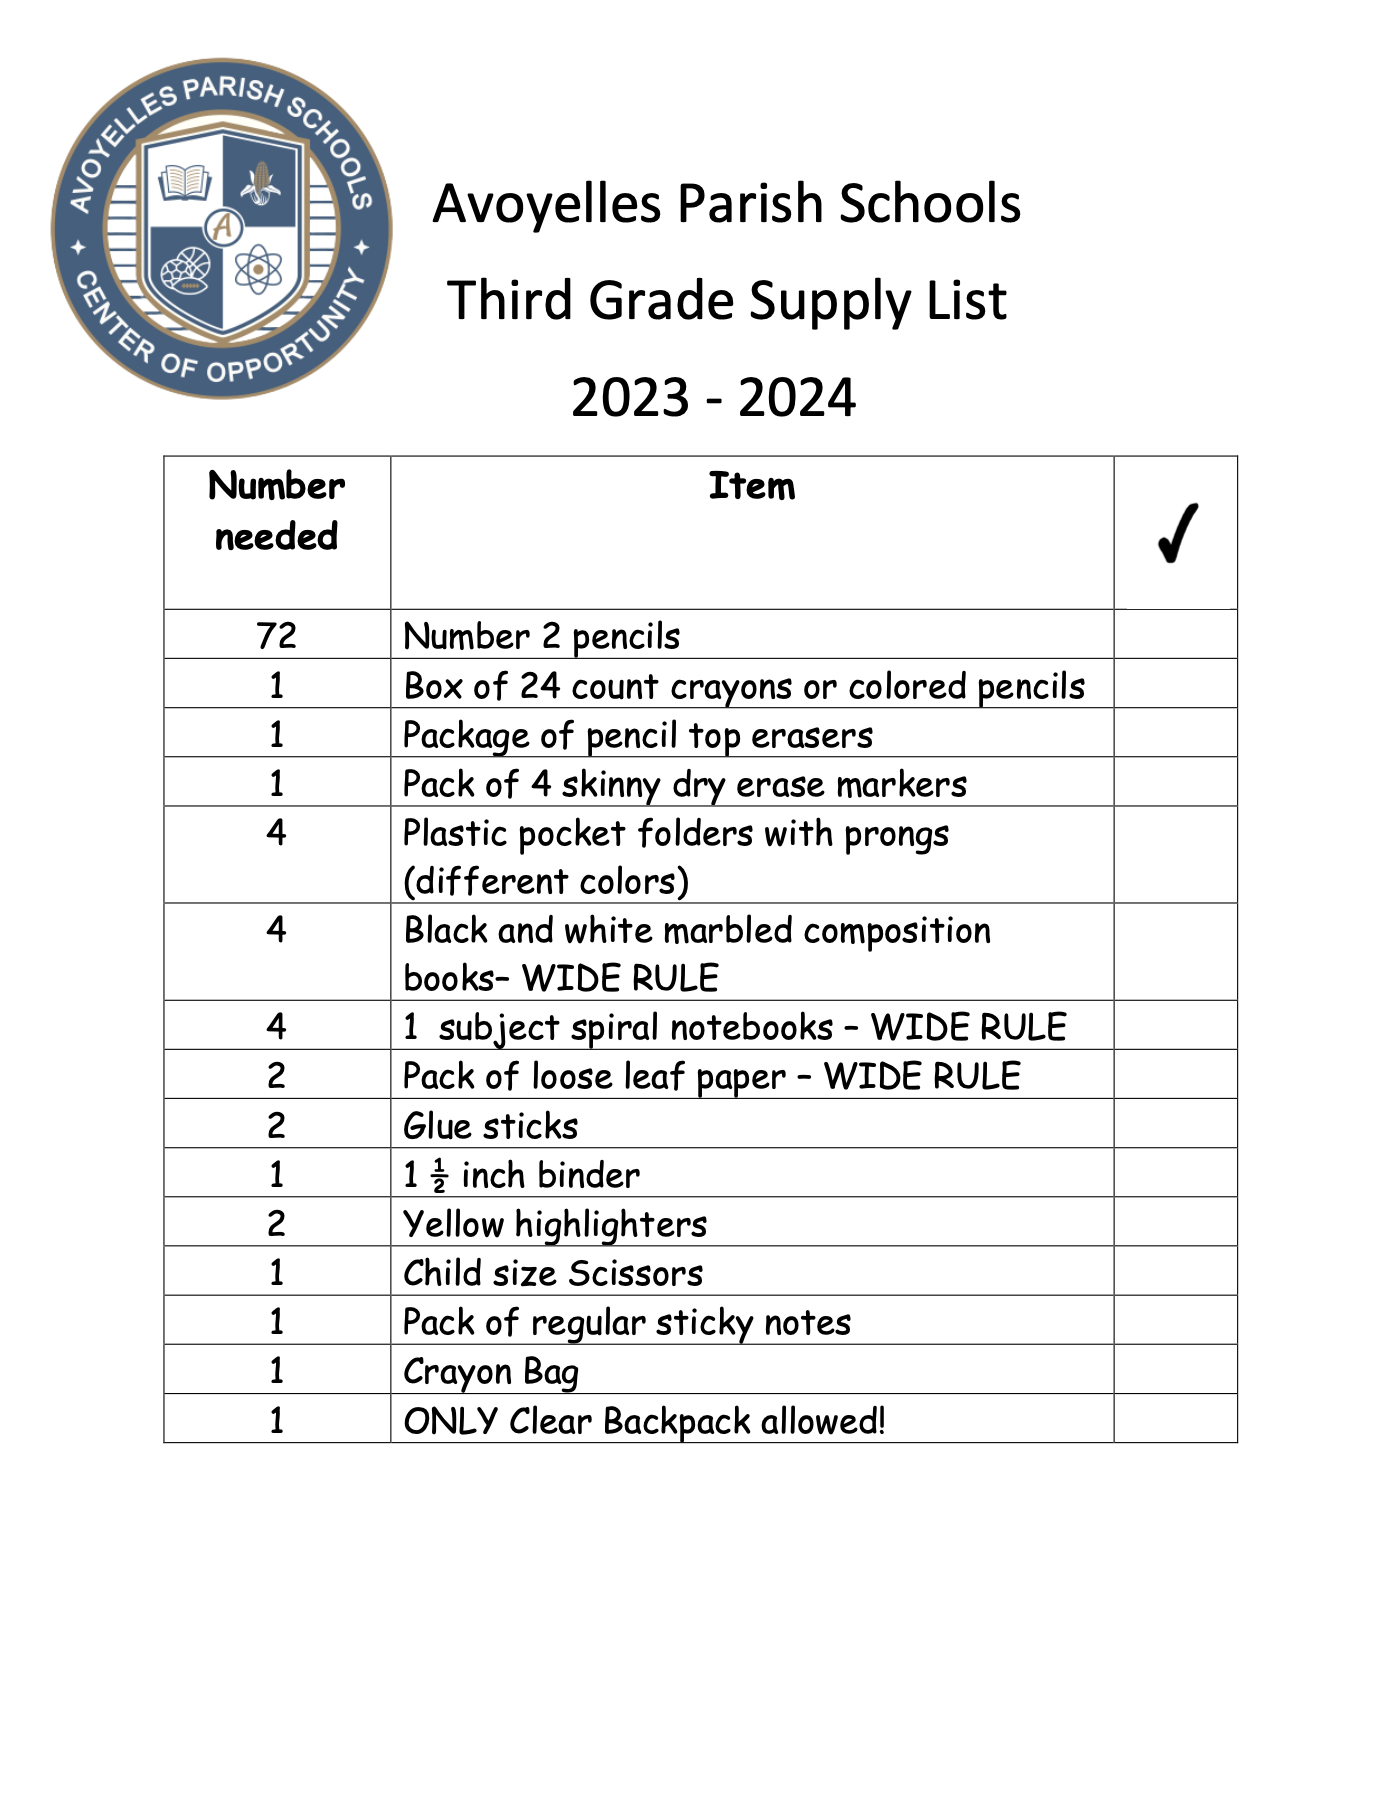 5th Grade Supply List 2023-2024